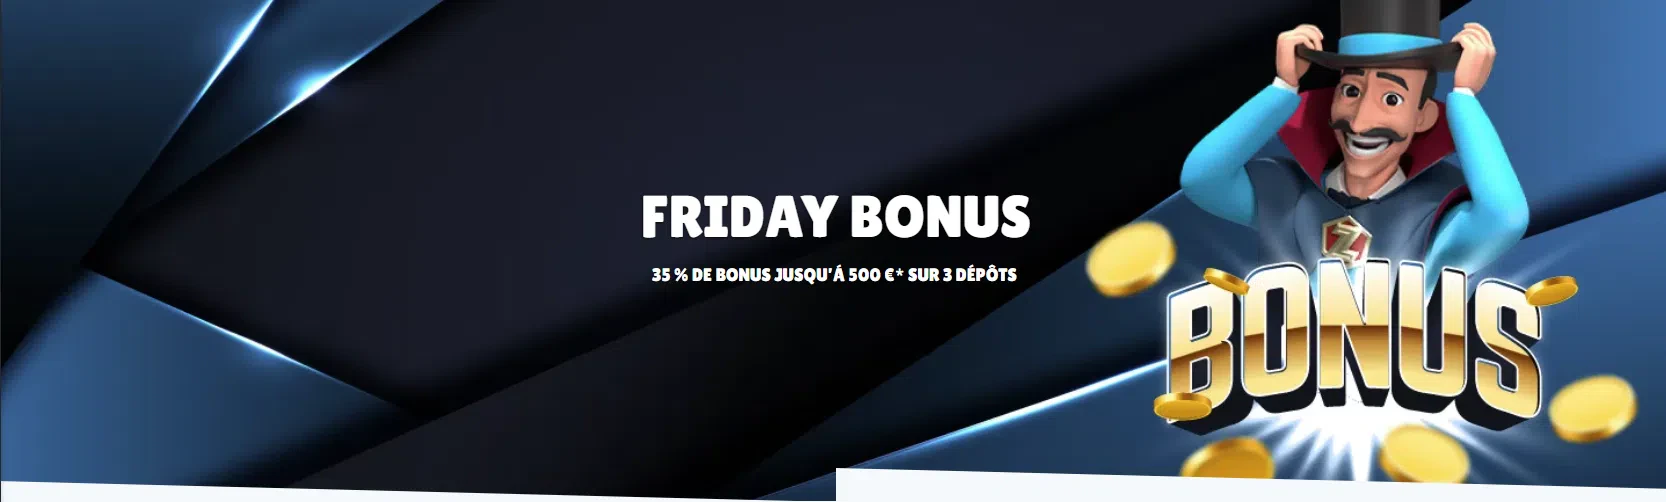 Bonus Friday jusqu'à 500€